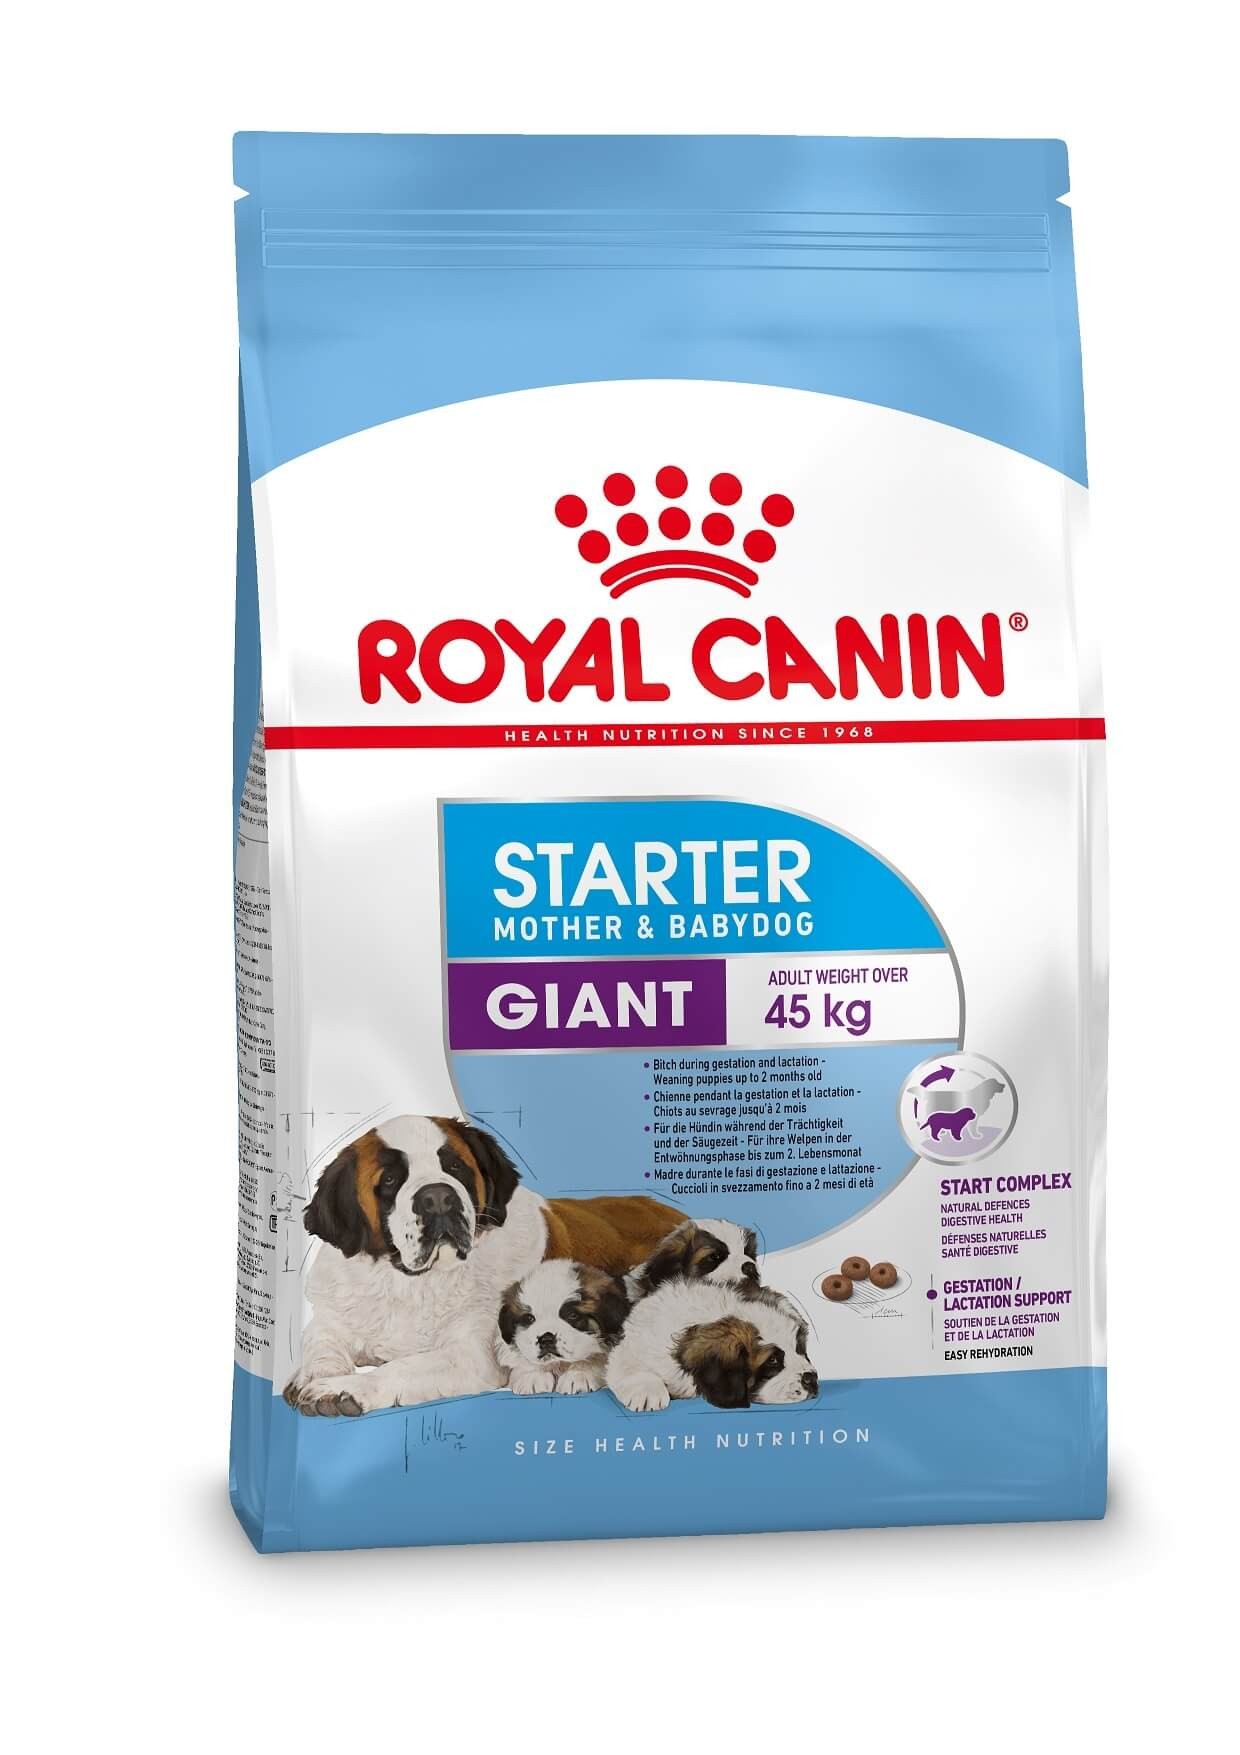 Royal Canin Giant Starter Mother & Babydog hundefoder